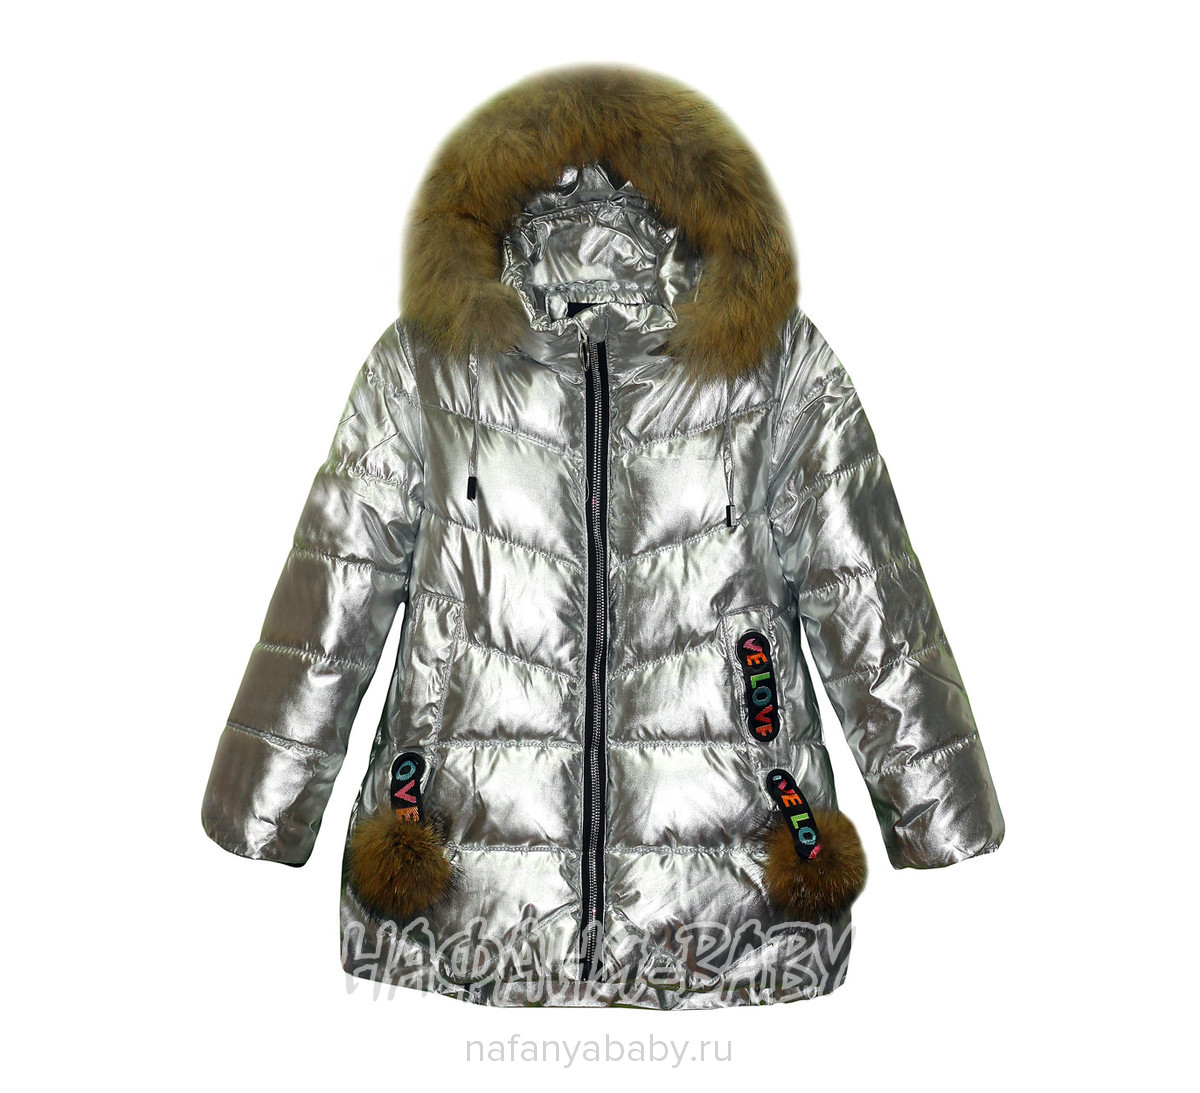 Зимняя удлиненная куртка DELFIN-FREE арт: 18104, 5-9 лет, 1-4 года, оптом Китай (Пекин)